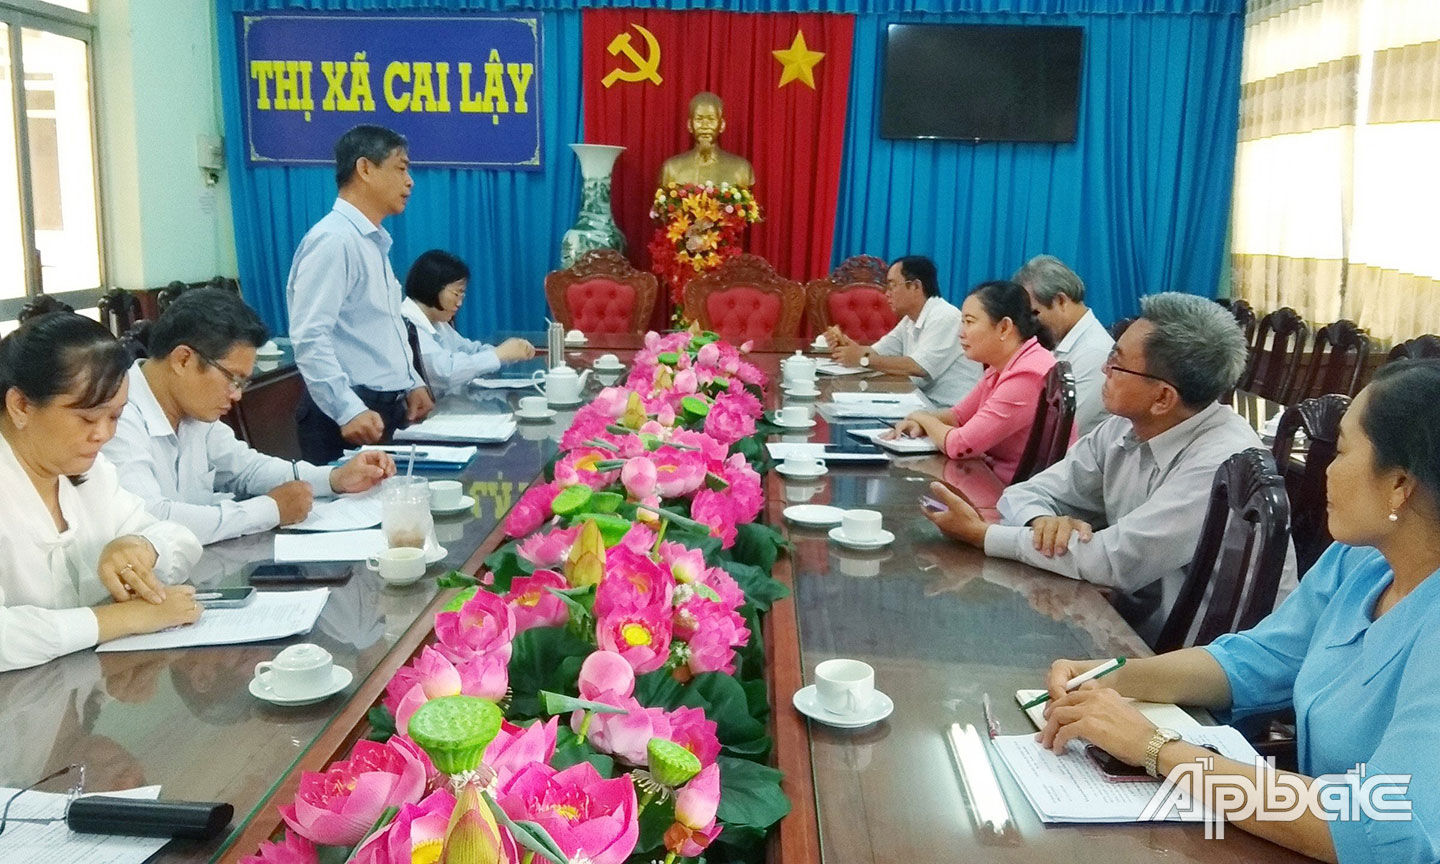 Đồng chí Nguyễn Hữu Diệp, phát biểu nhận xét sau giám sát với Phó chủ tịch UBND thị xã Cai Lậy Võ Thị Búp, các thành viên của BCĐ PCTHCTL thị xã.